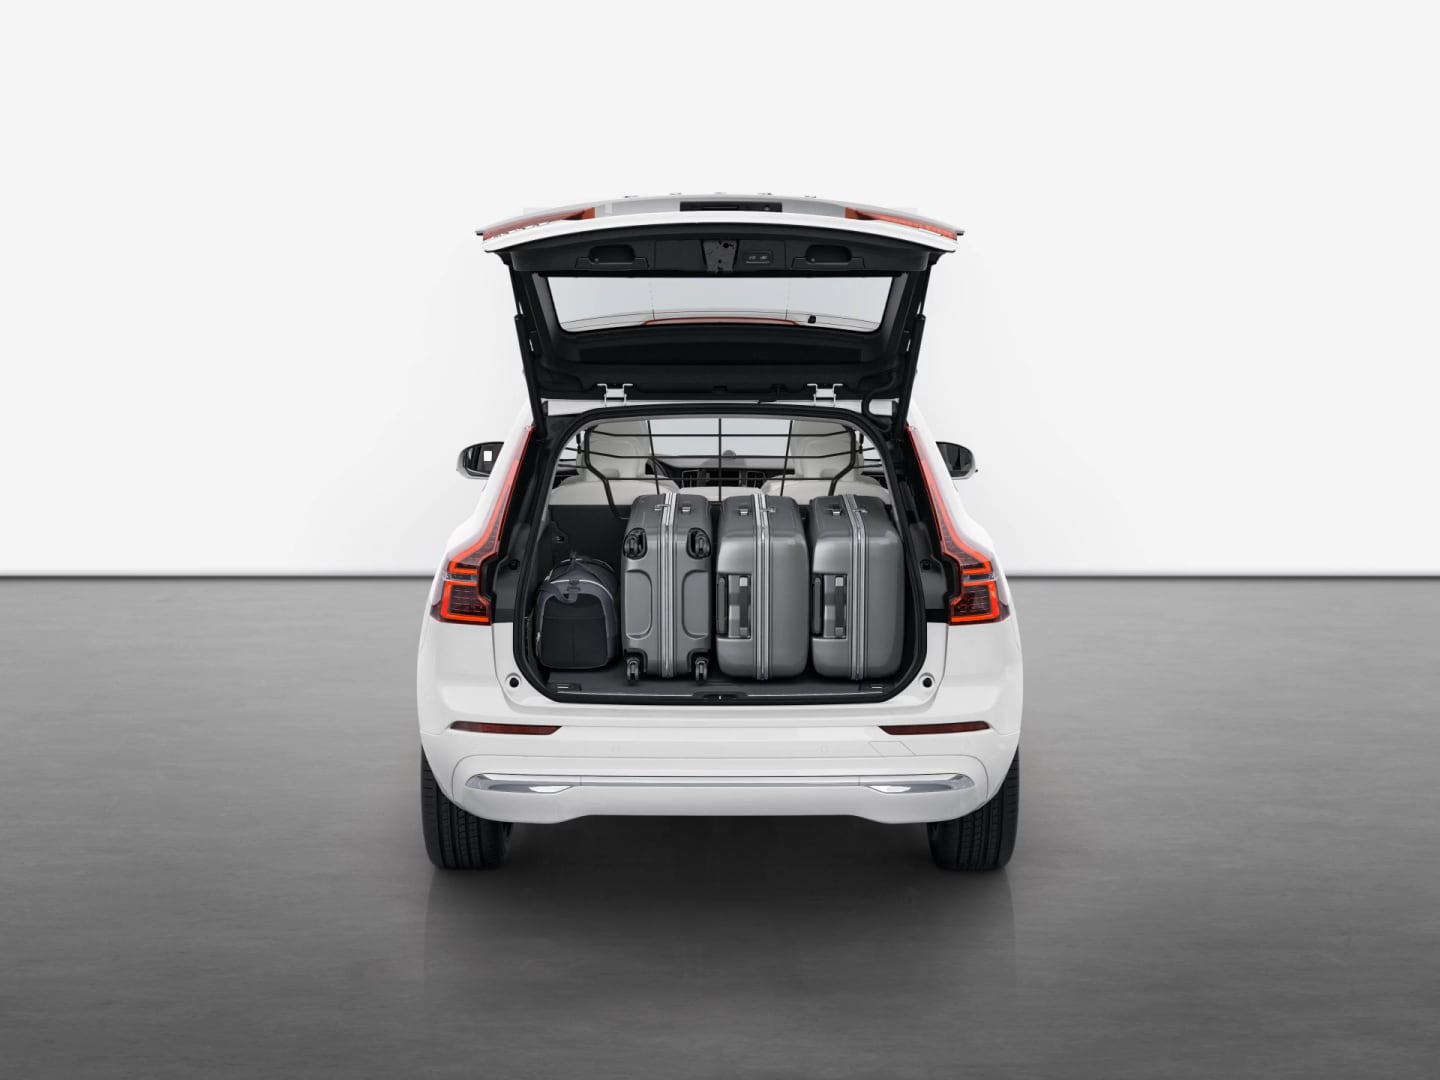 Heckansicht des Volvo XC60 Plug-in Hybrid mit geöffnetem Kofferraum, in dem zu sehen ist, wie viel Gepäck hineinpasst.